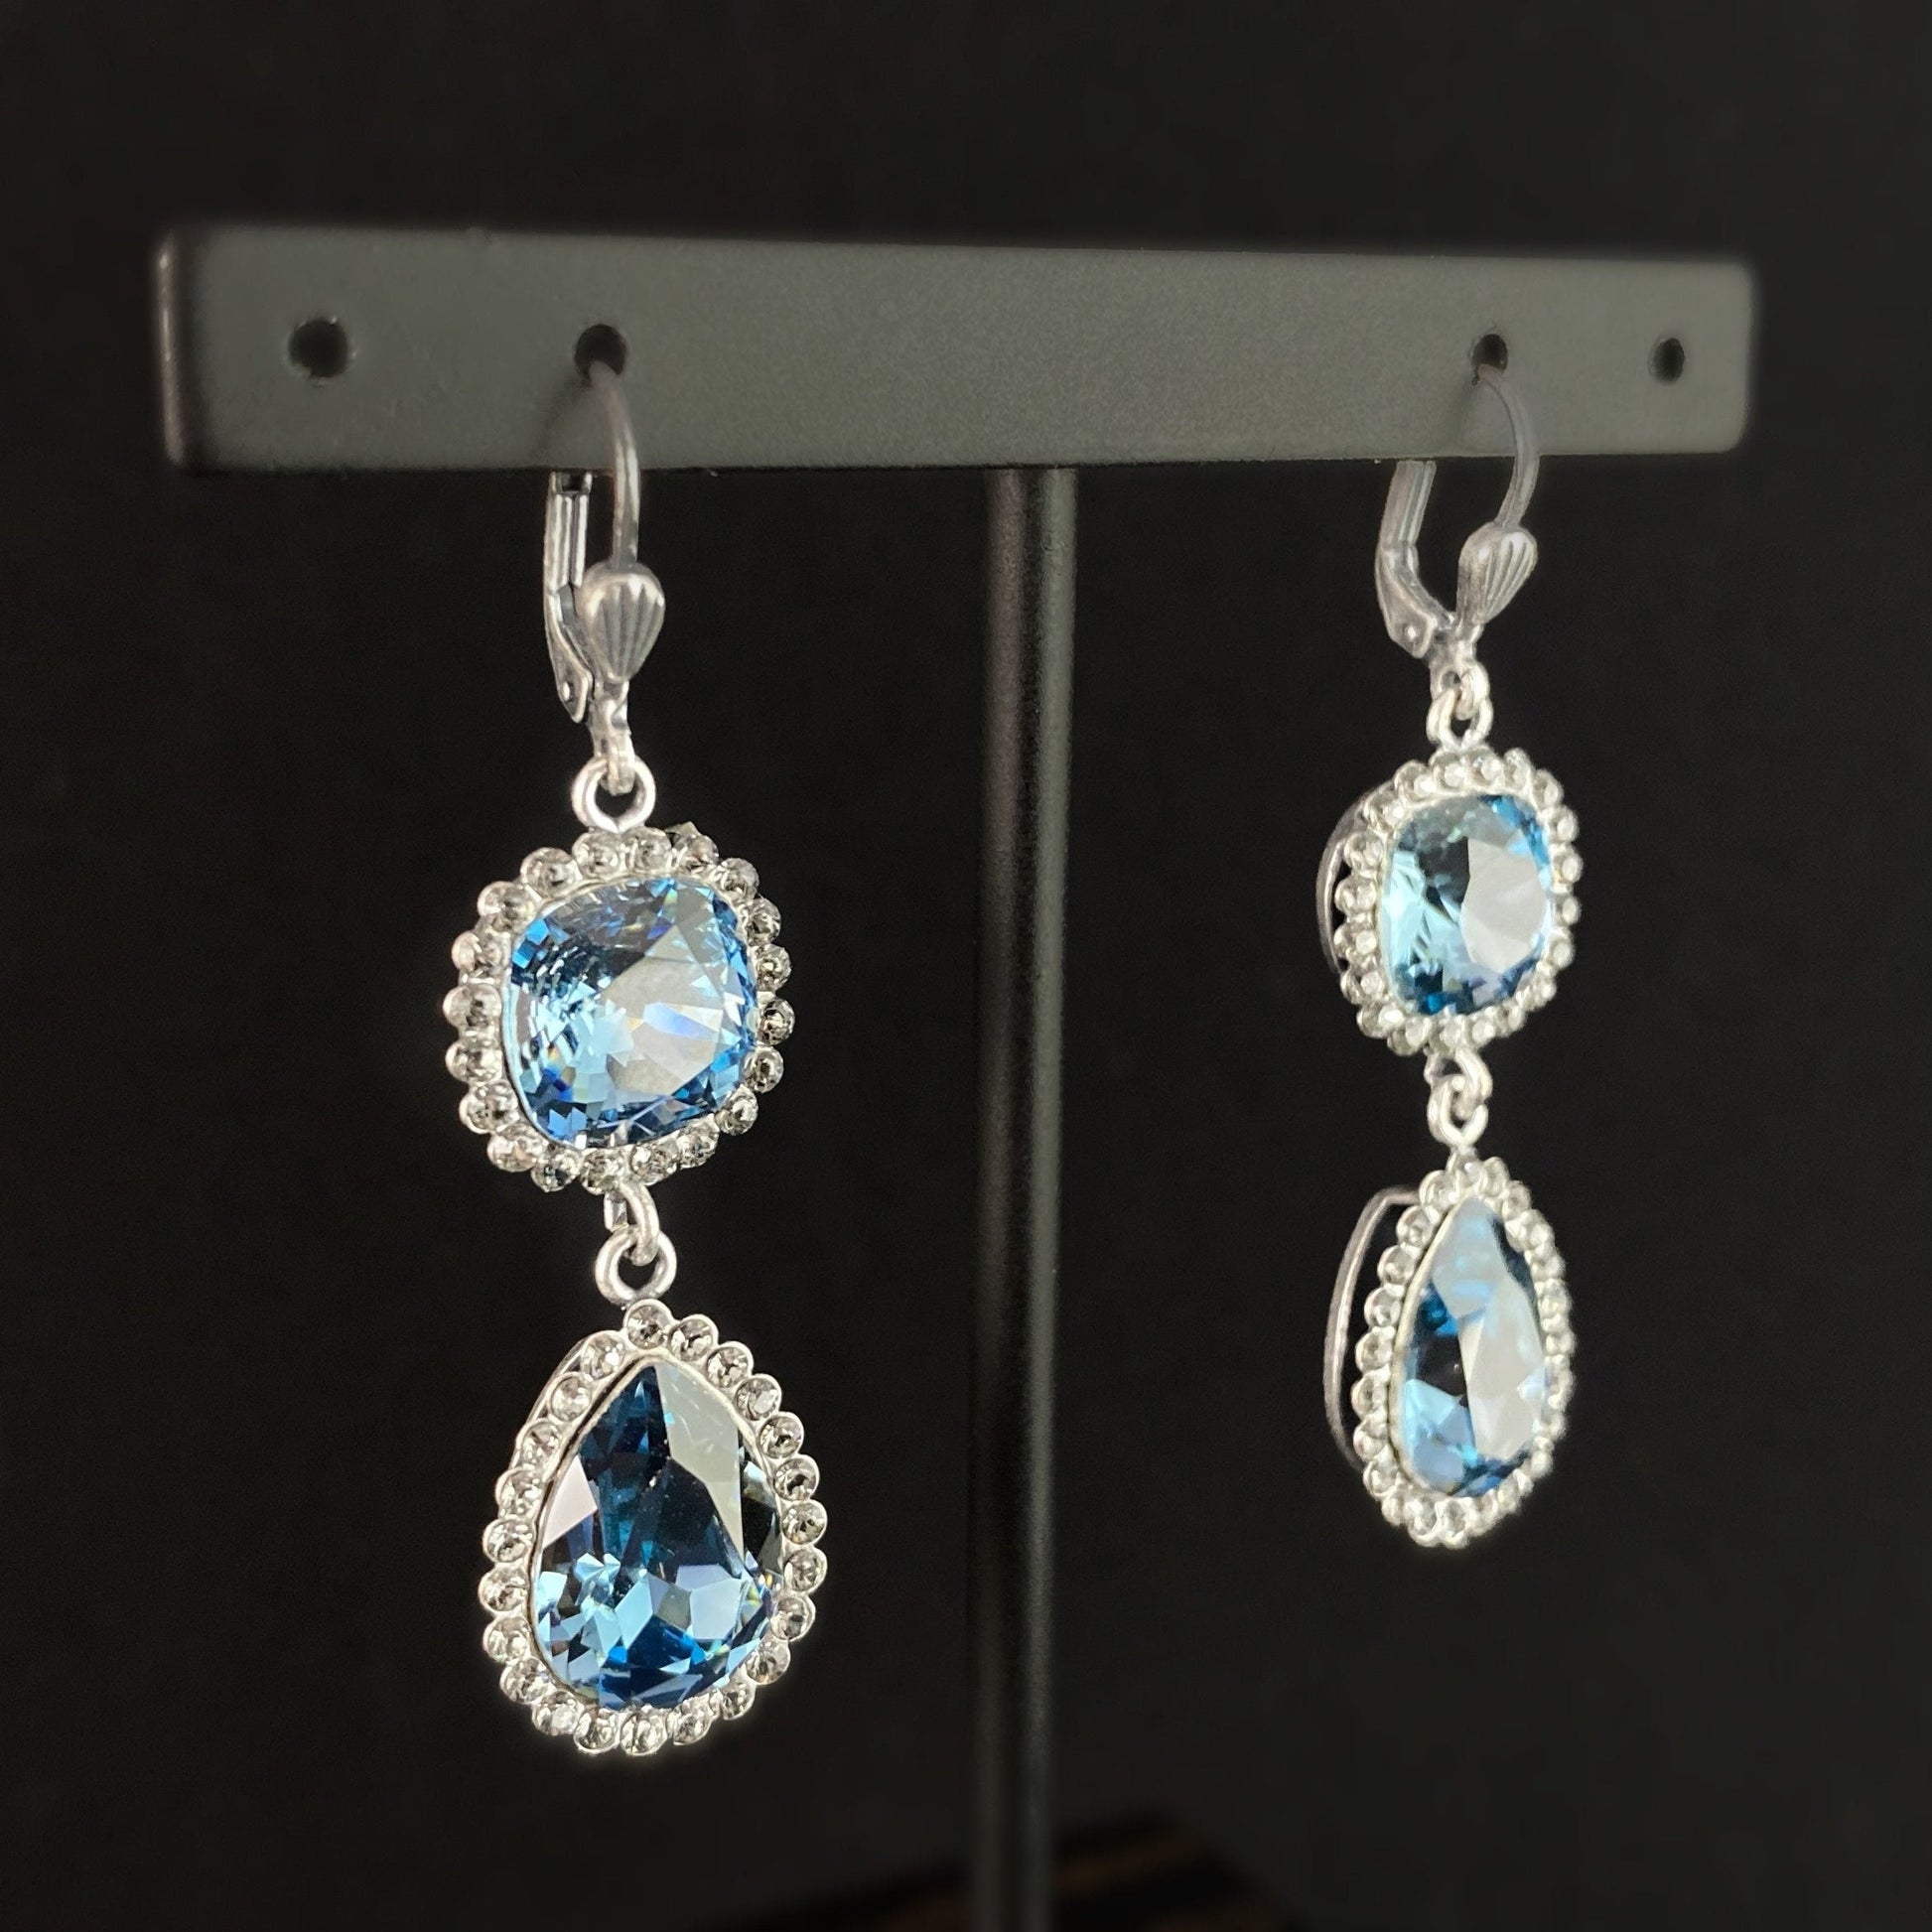 Pear Cut Swarovski Crystal Teardrop Earrings, Light Blue - La Vie Parisienne by Catherine Popesco